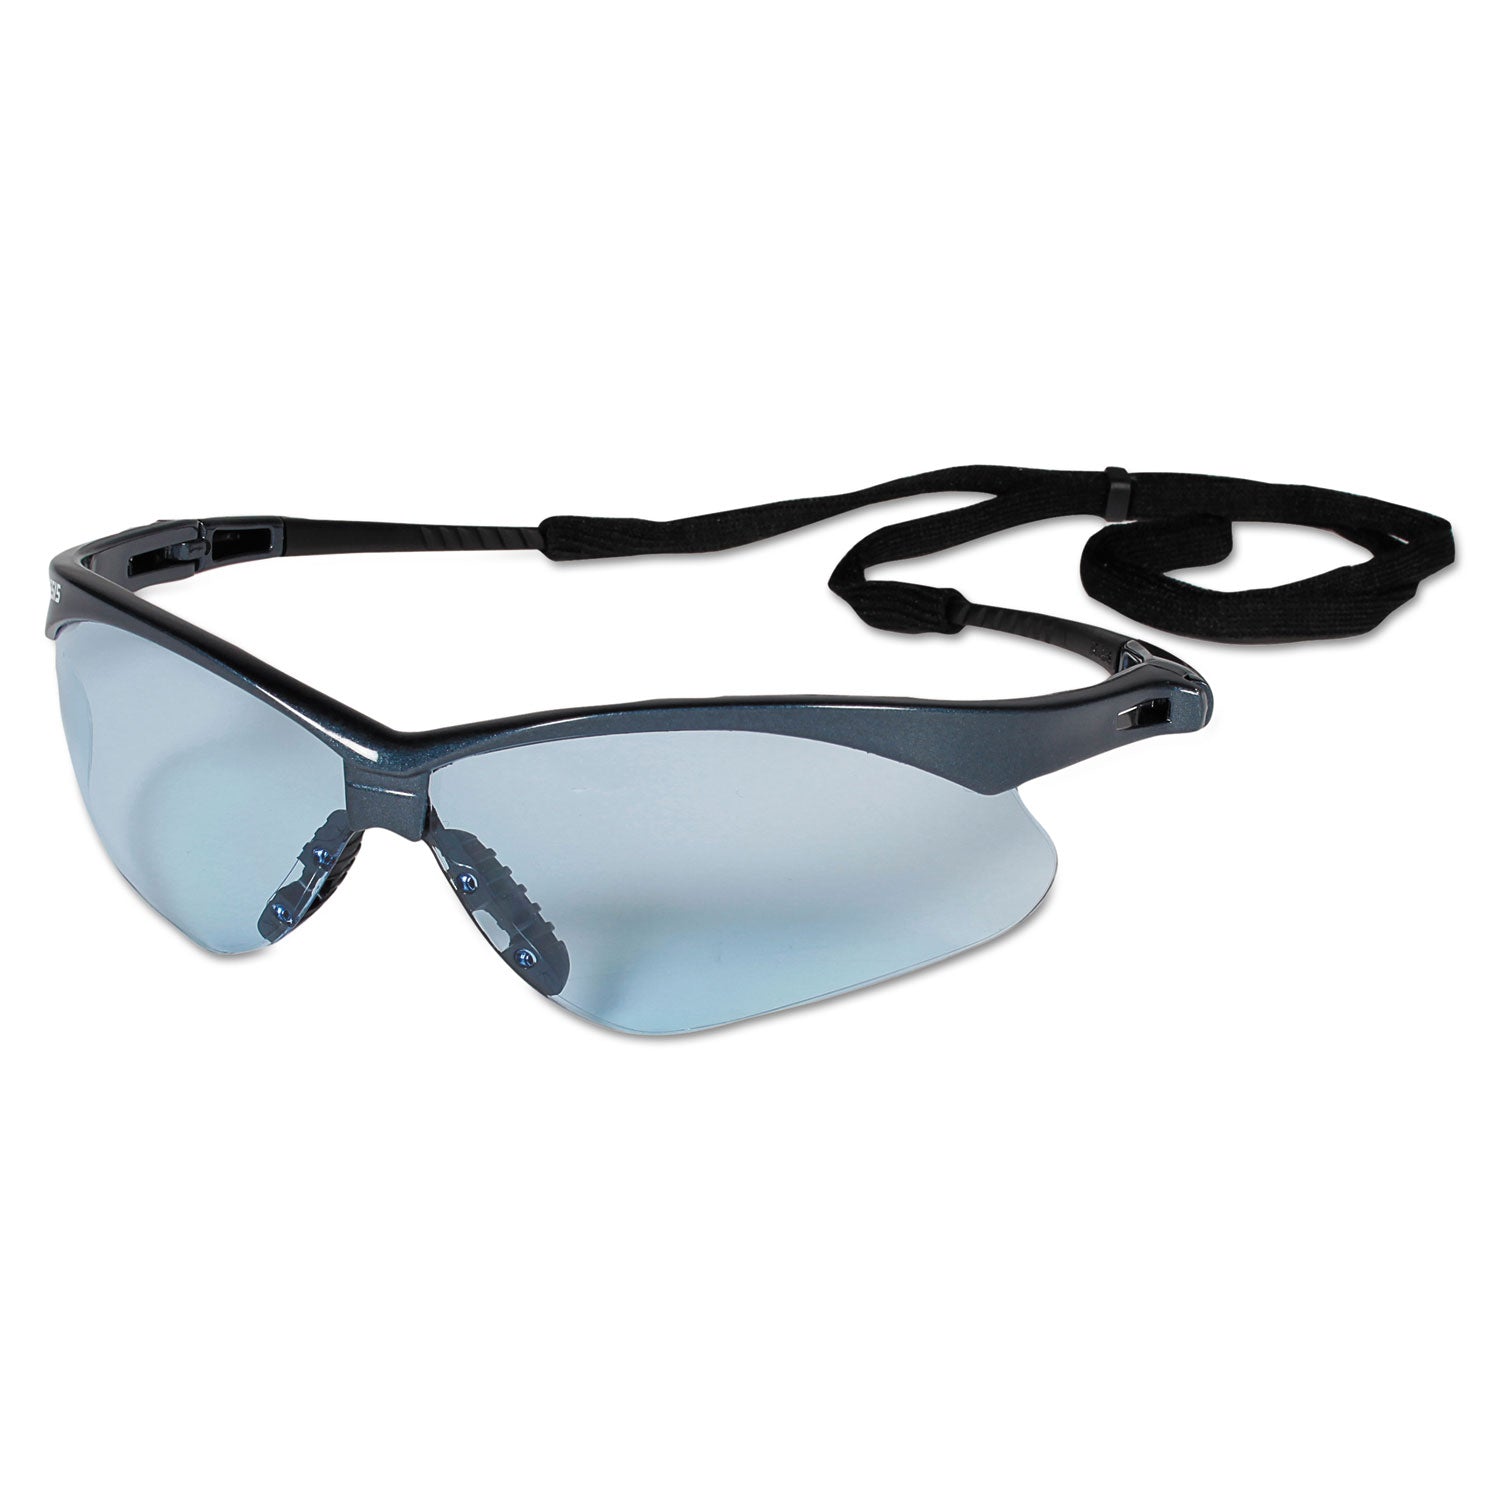 v30-nemesis-safety-glasses-blue-frame-light-blue-uncoated-lens-12-box_kcc19639 - 1